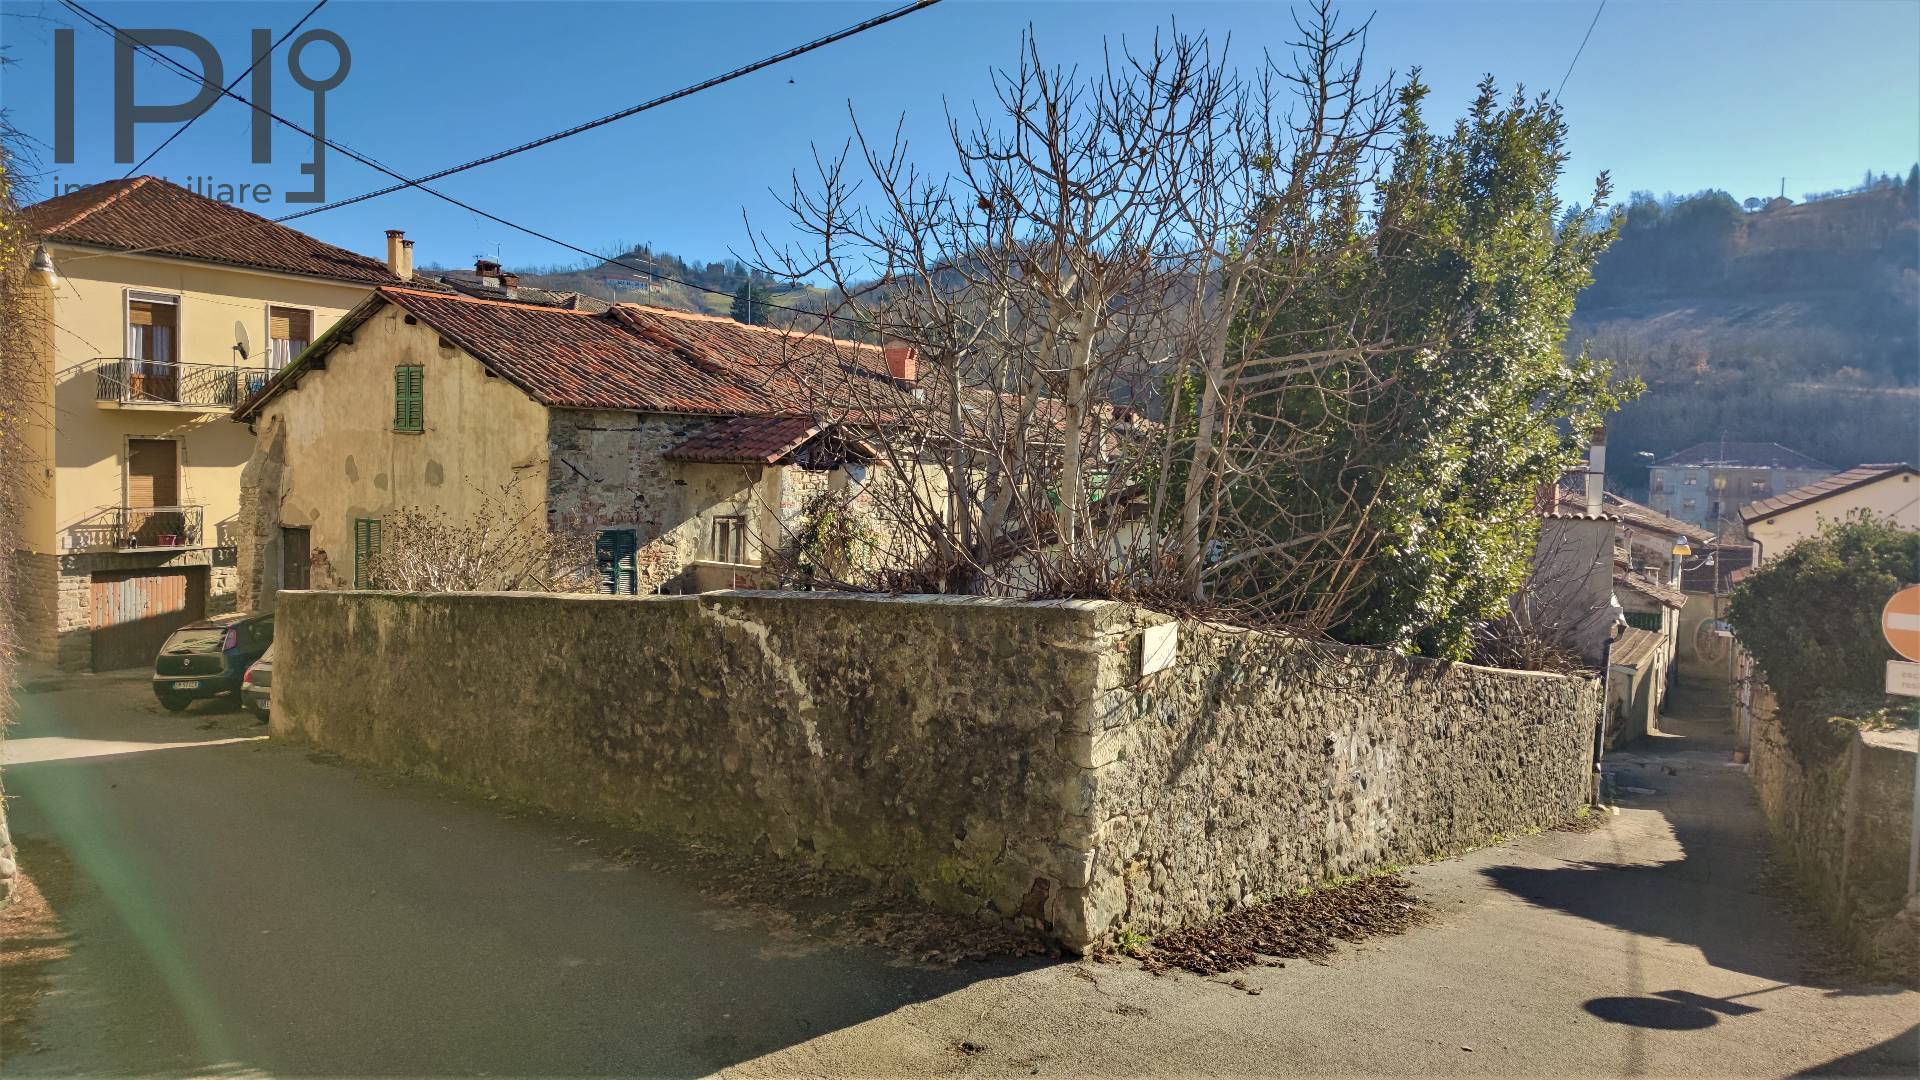 Rustico / Casale in vendita a Spigno Monferrato, 10 locali, prezzo € 38.000 | PortaleAgenzieImmobiliari.it